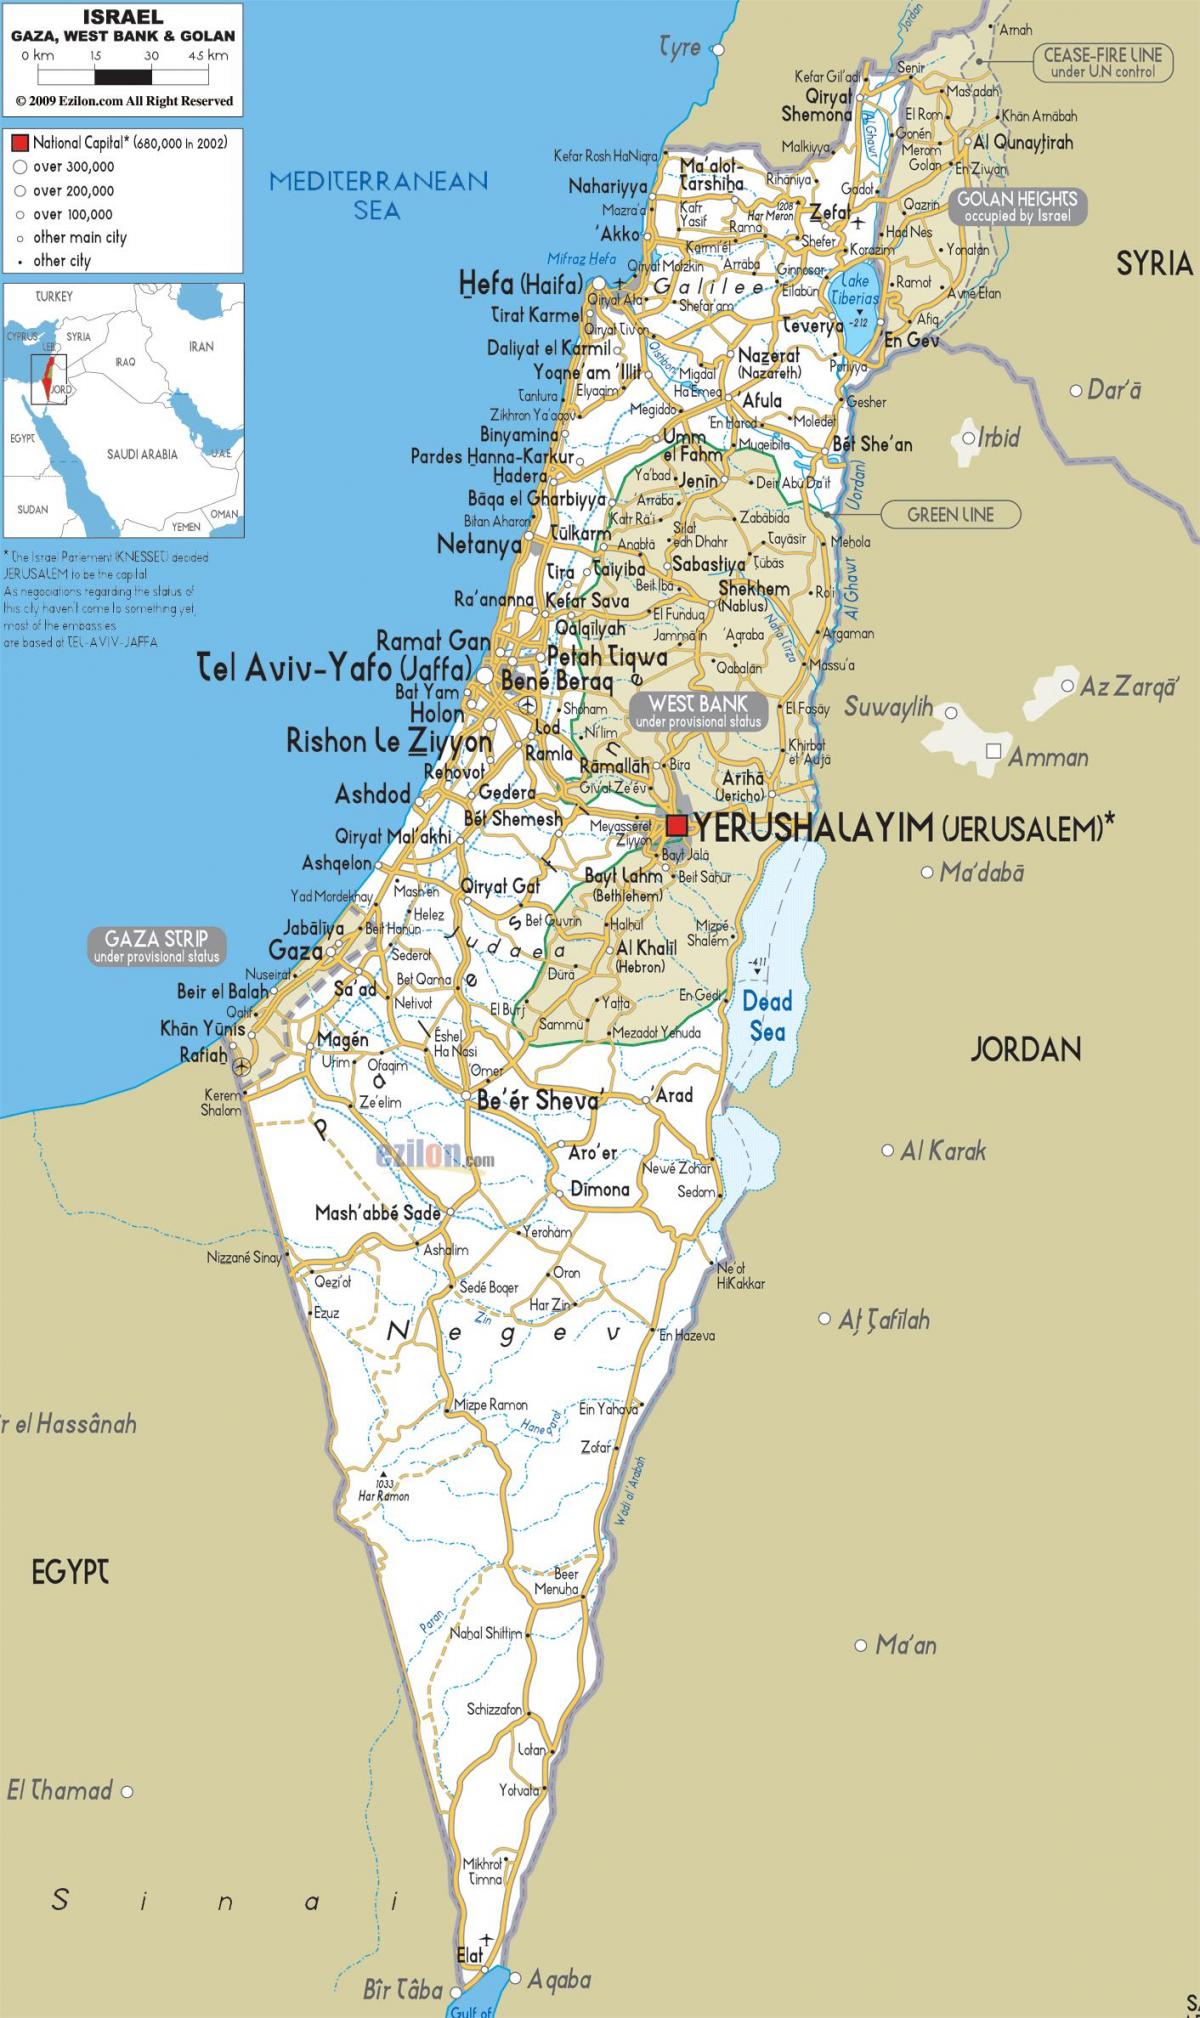 zemljevid izraela ceste